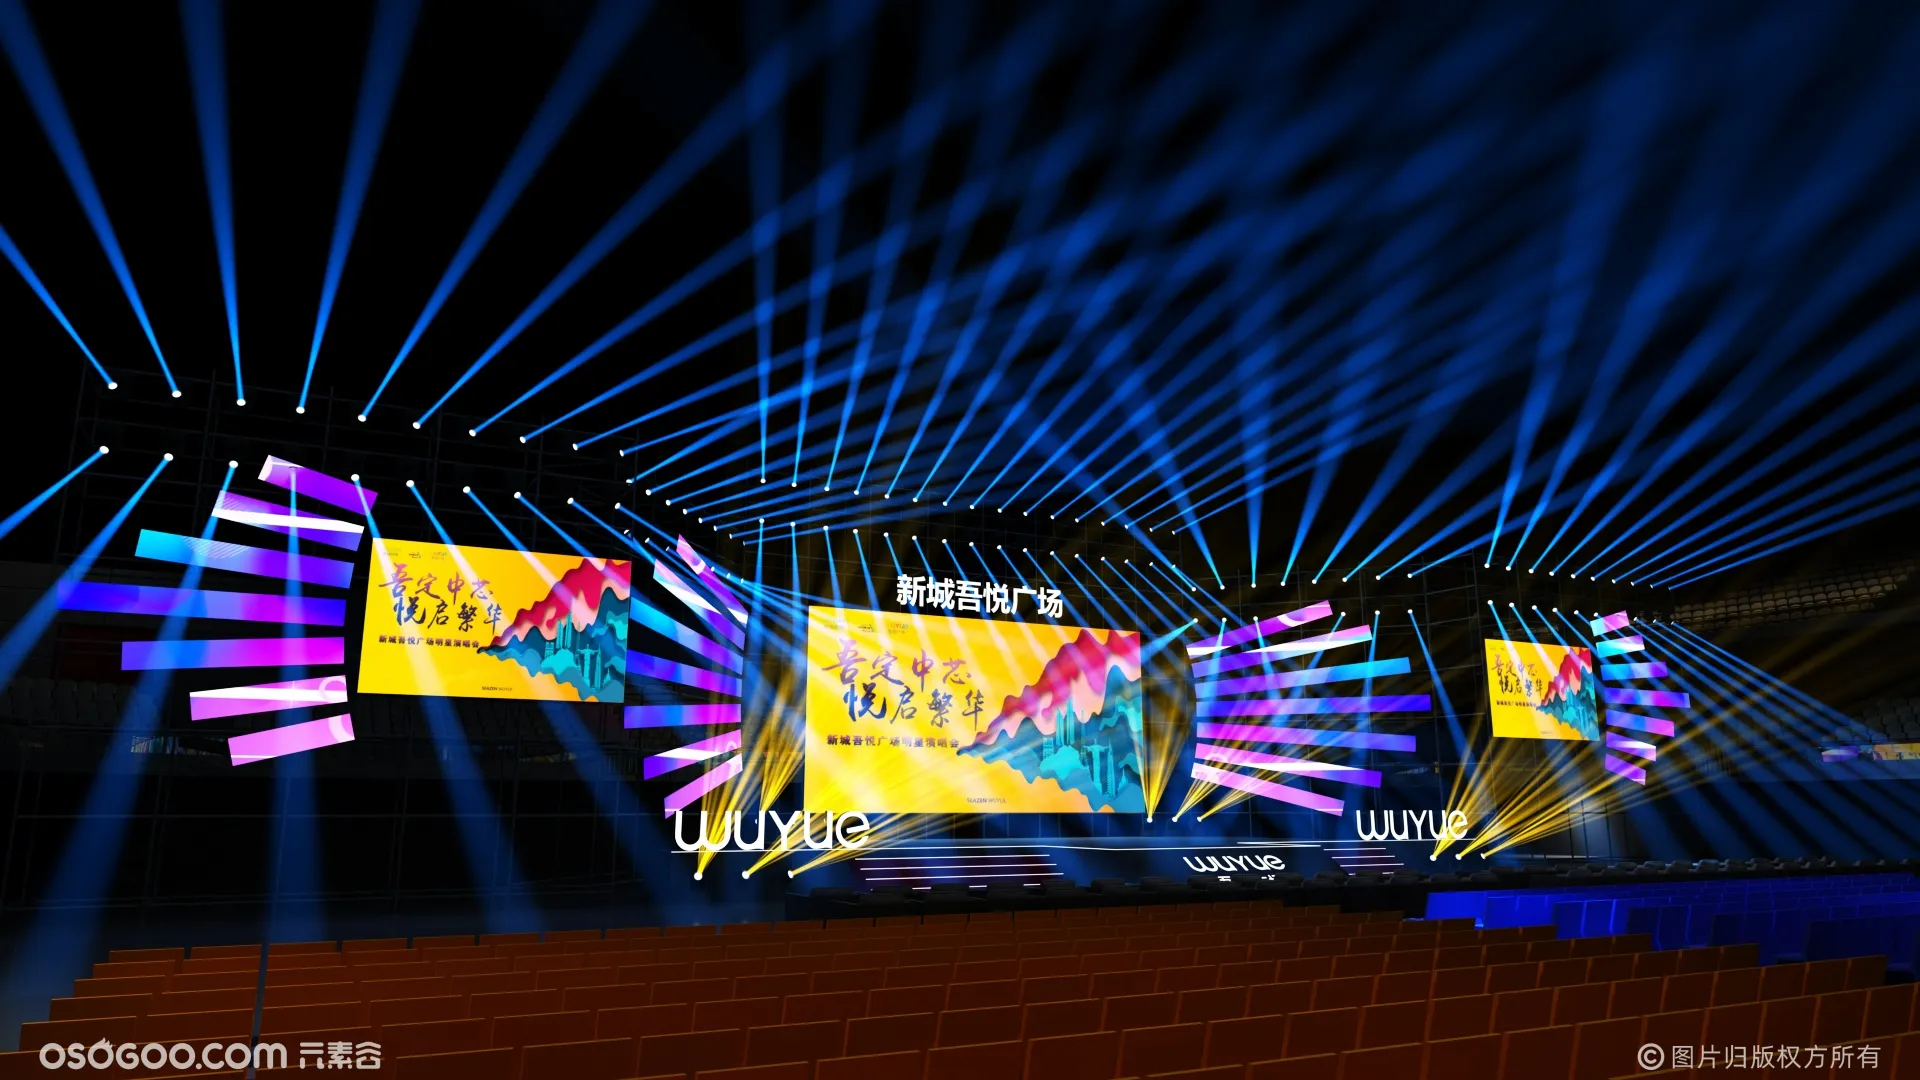 【max源文件】四面观众舞台群星演唱会舞台效果图 - 舞台3D模型 - 舞美咖网-wmka - Powered by Discuz!